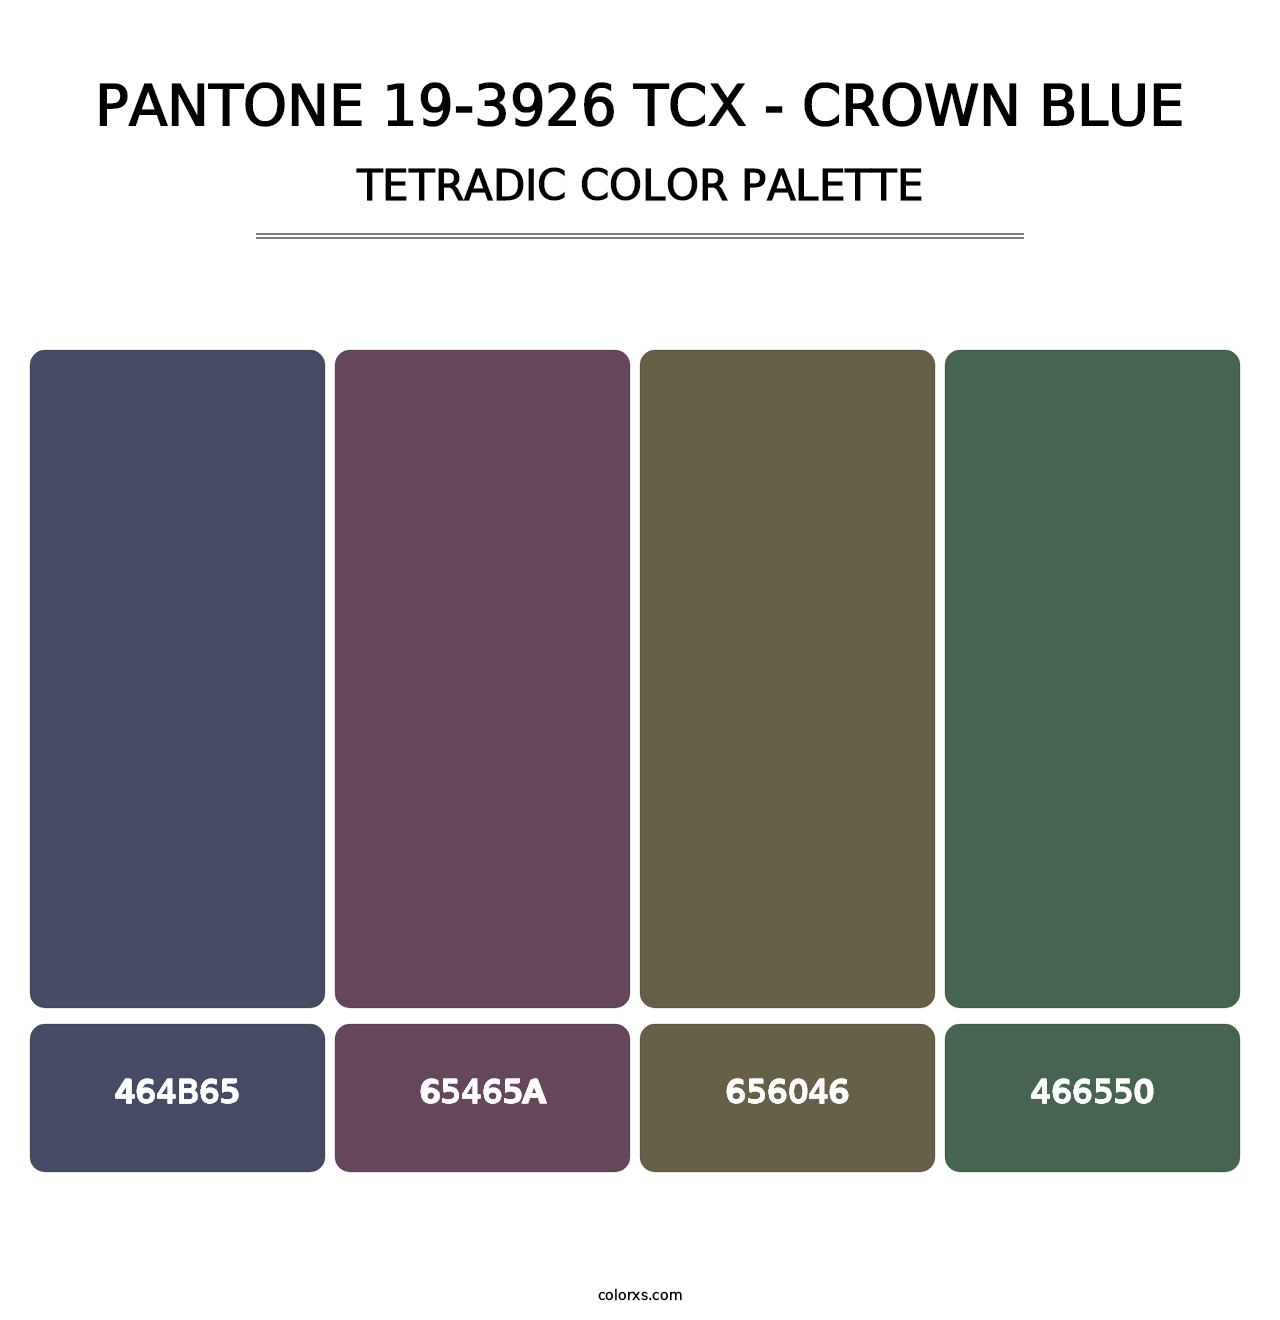 PANTONE 19-3926 TCX - Crown Blue - Tetradic Color Palette